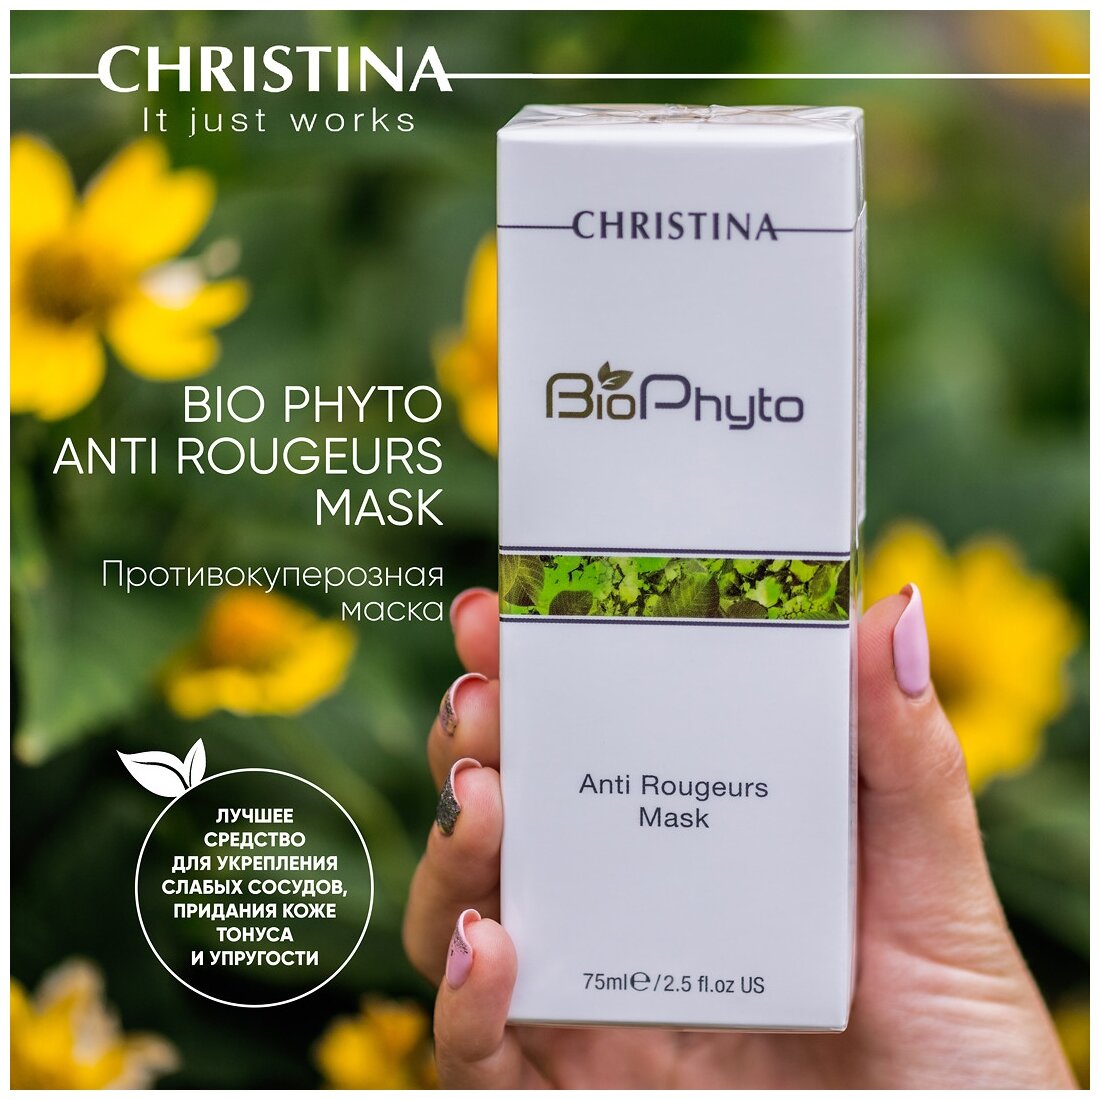 Christina Anti Rougeurs Mask Противокуперозная маска 75 мл (Christina, ) - фото №4